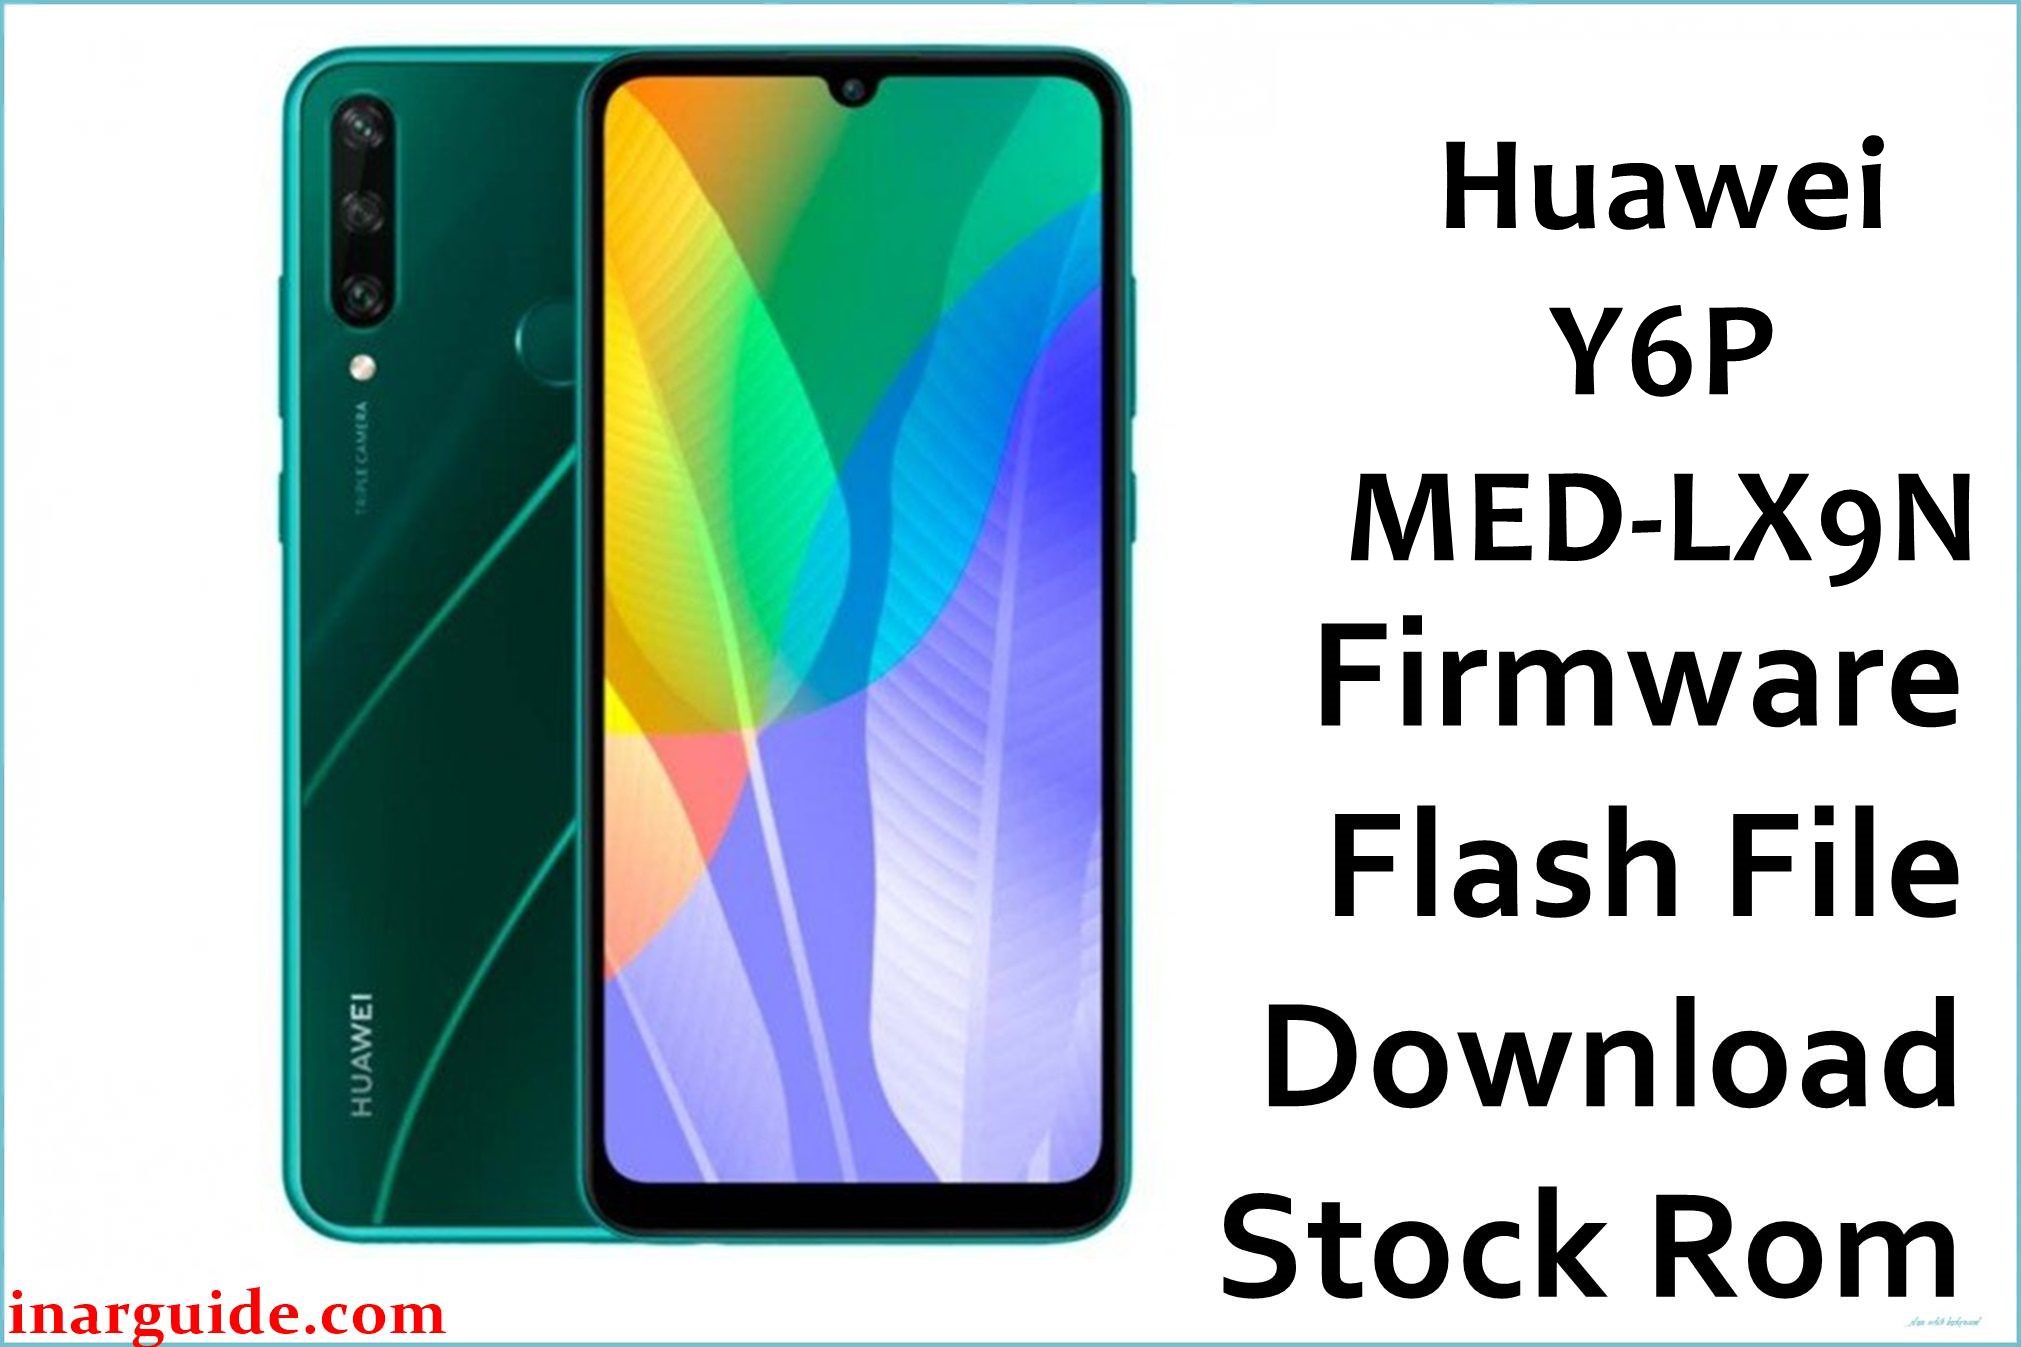 Huawei Y6P MED LX9N